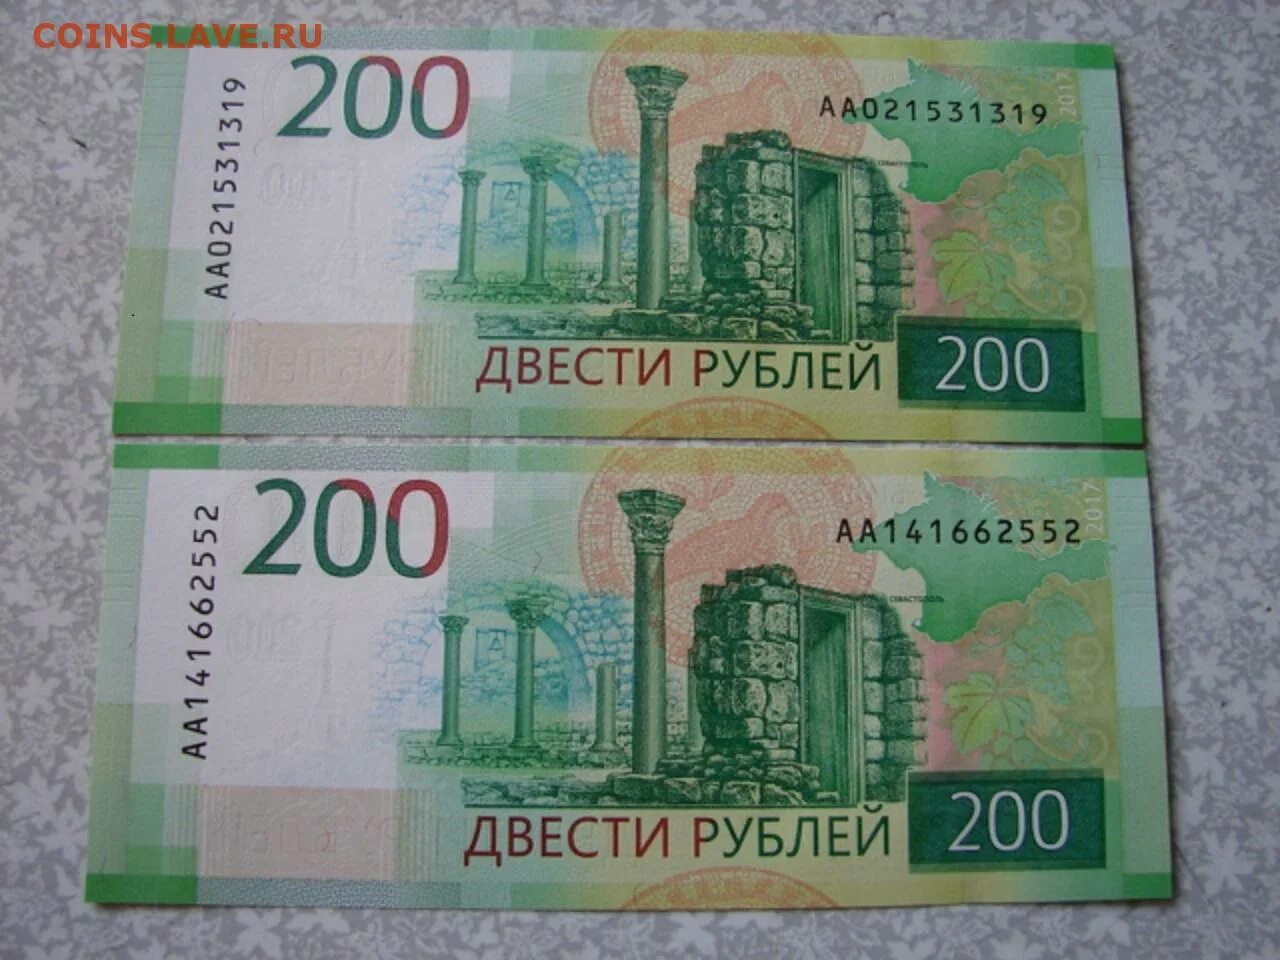 35 200 в рублях. Купюра 200 рублей. 200 Рублей банкнота Крым.